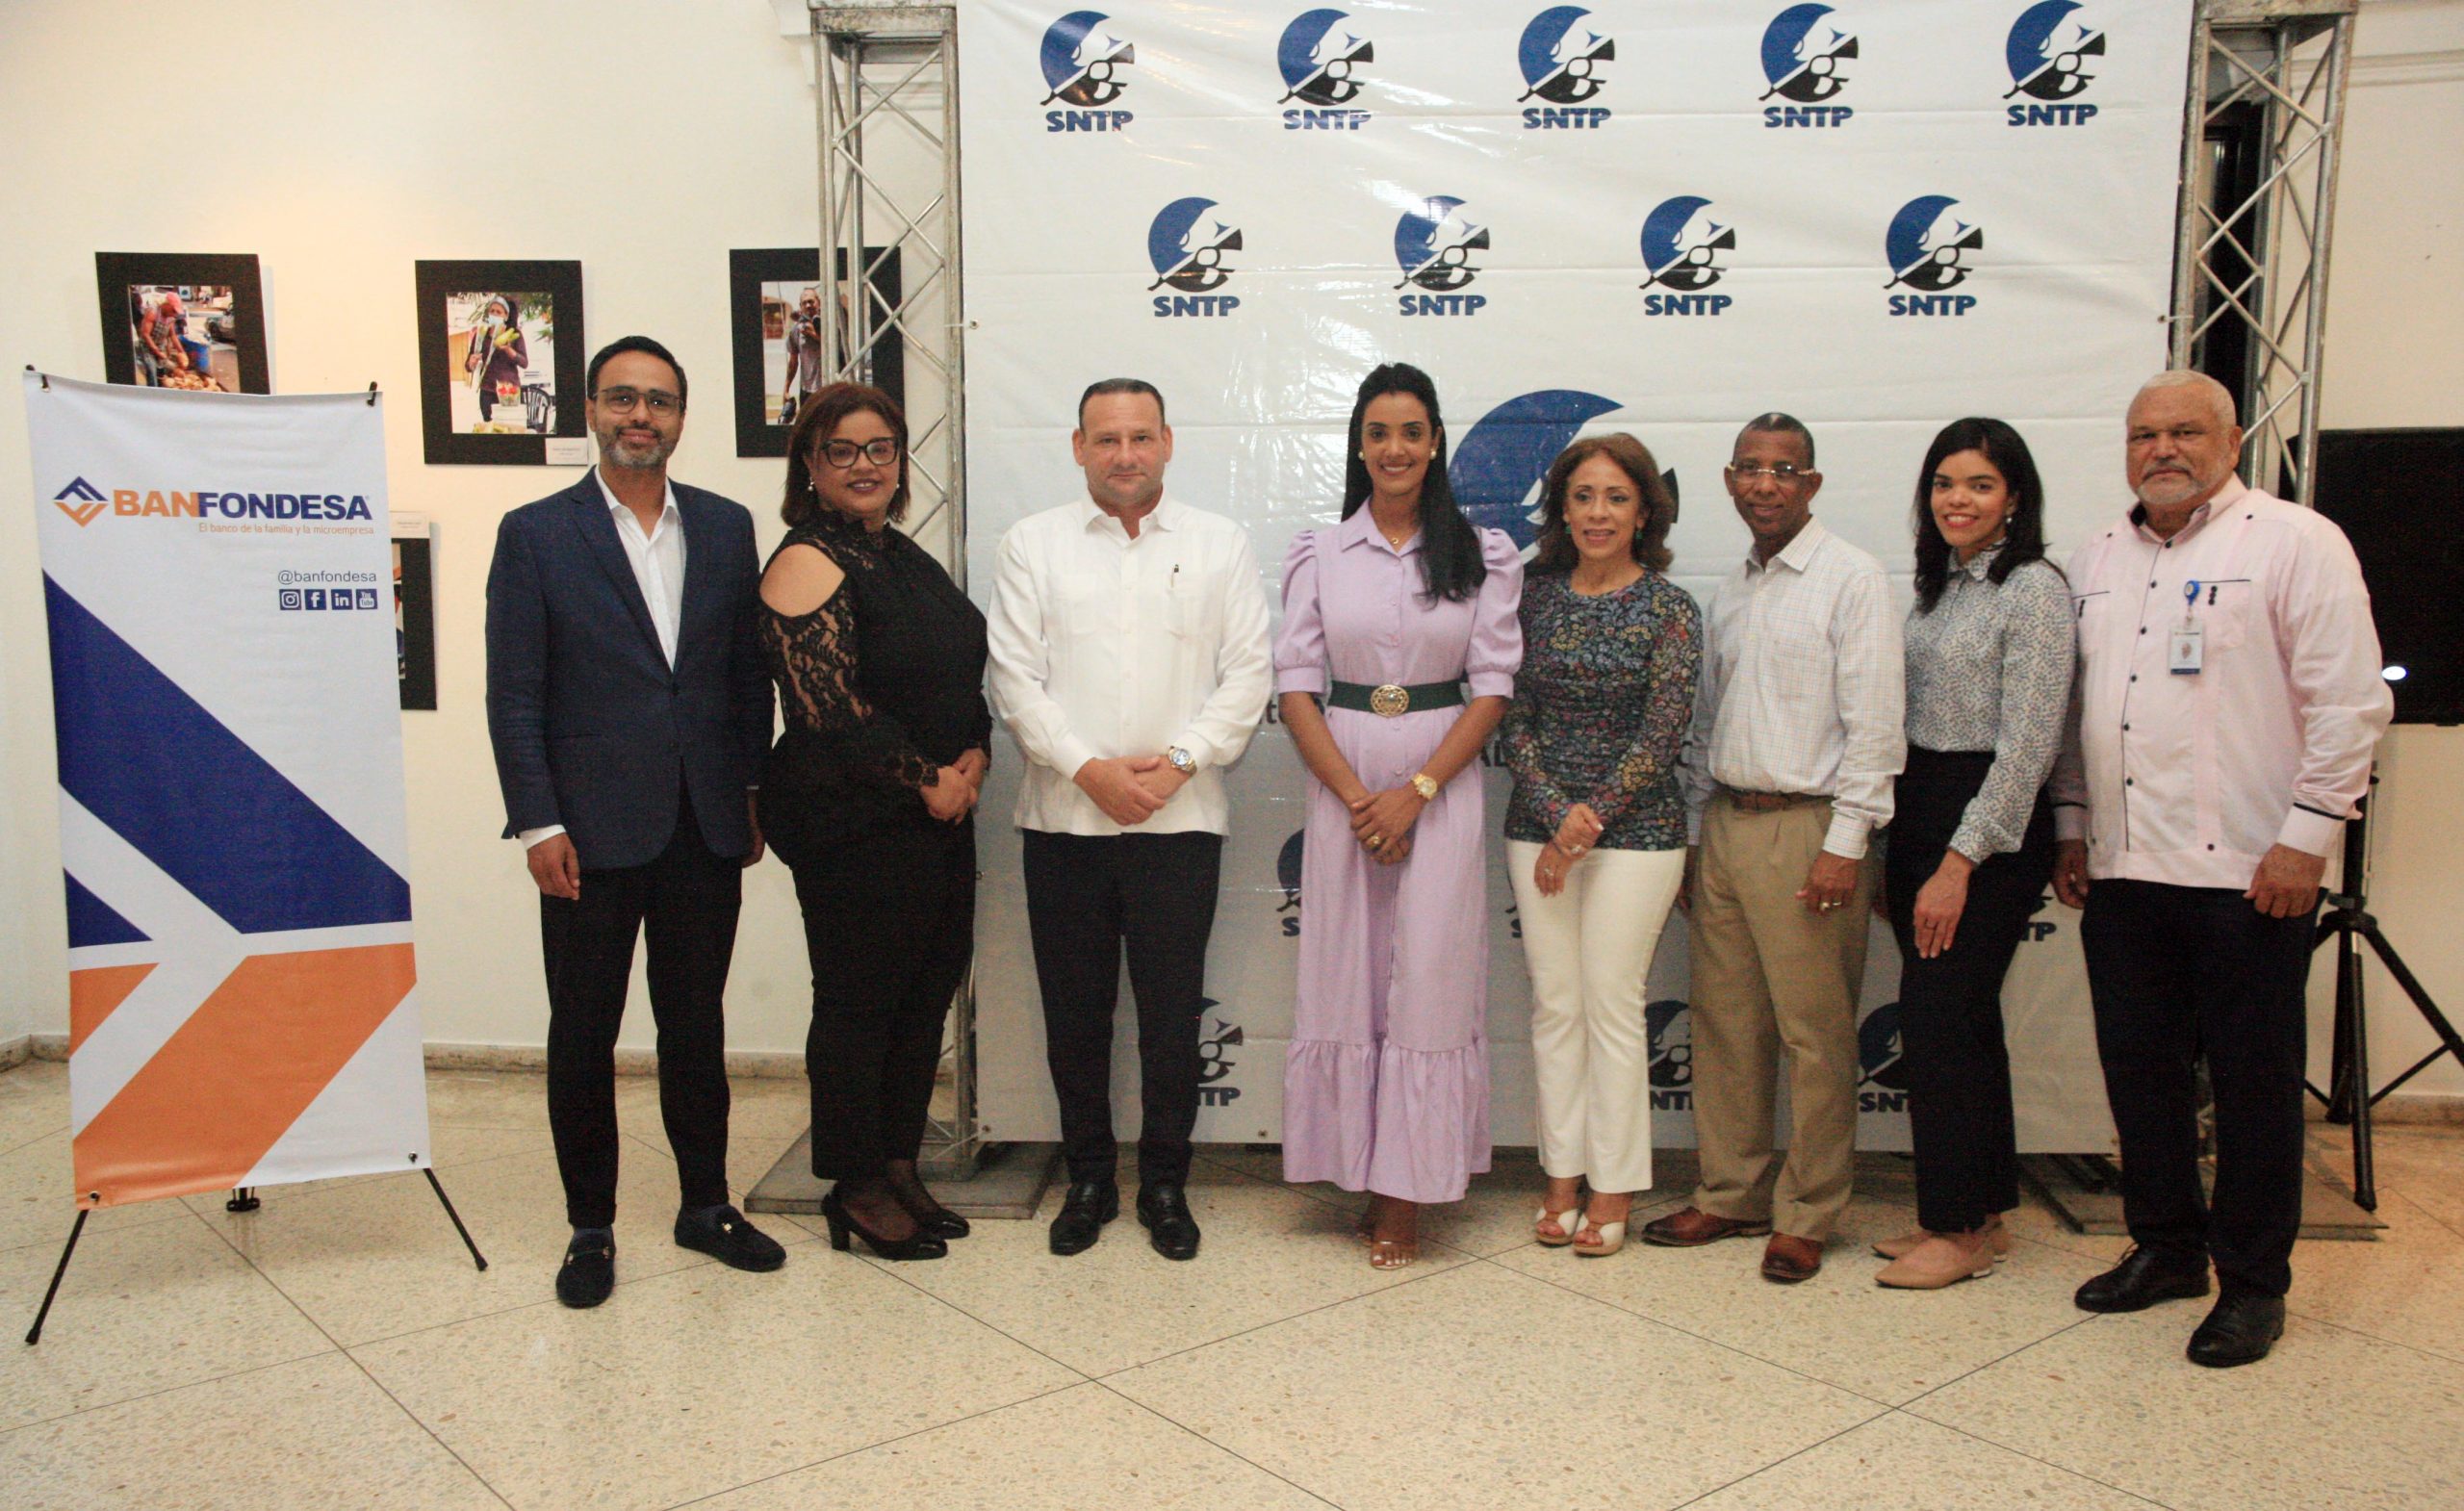 SNTP Santiago y BANFONDESA inauguran exposición fotográfica“Rostros del Desarrollo”